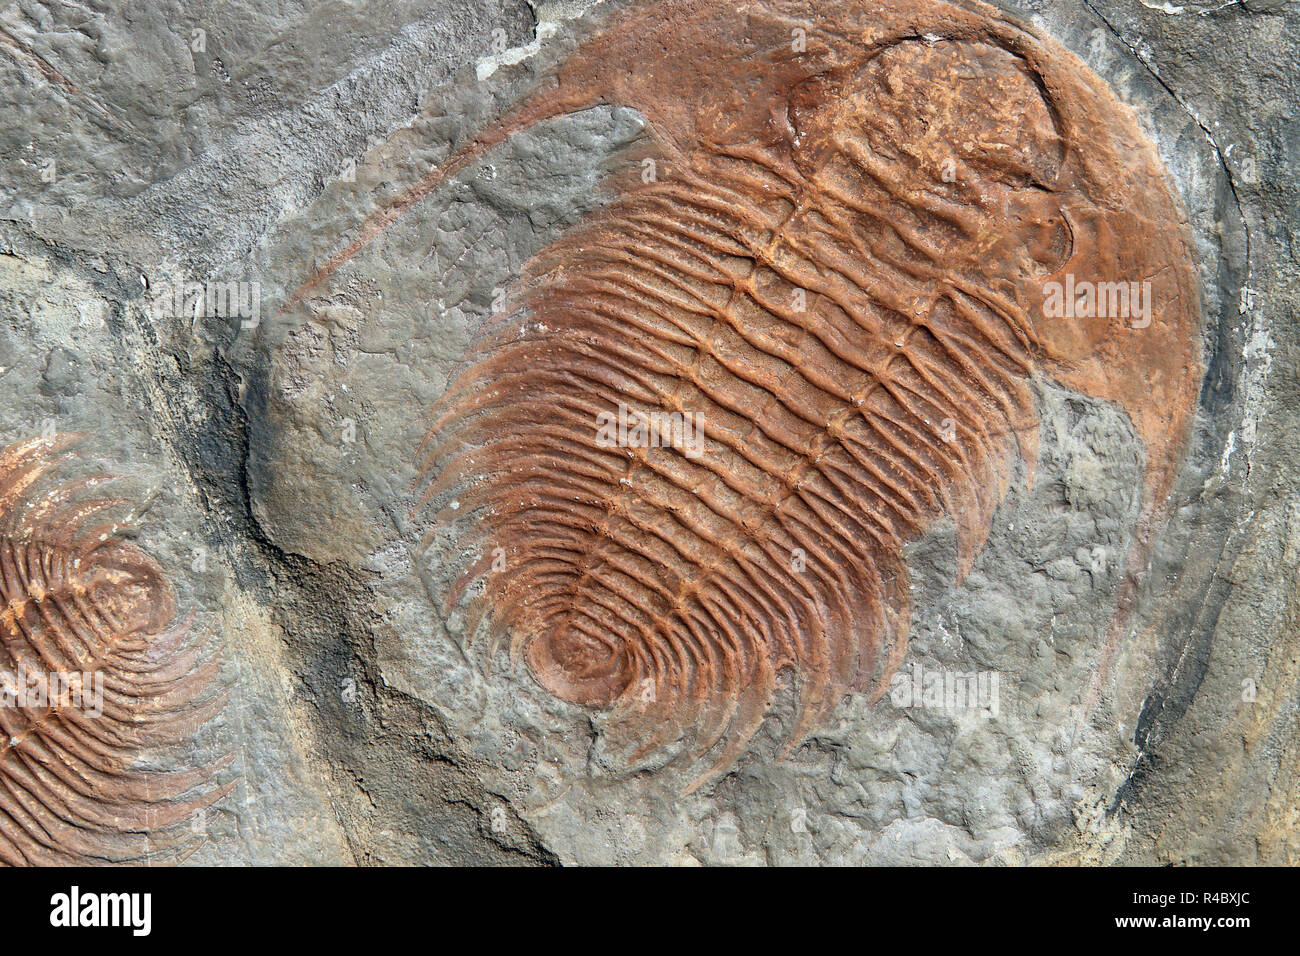 Fossil eines Trilobiten aus den frühen Ordovizium Zeitraum Stockfoto